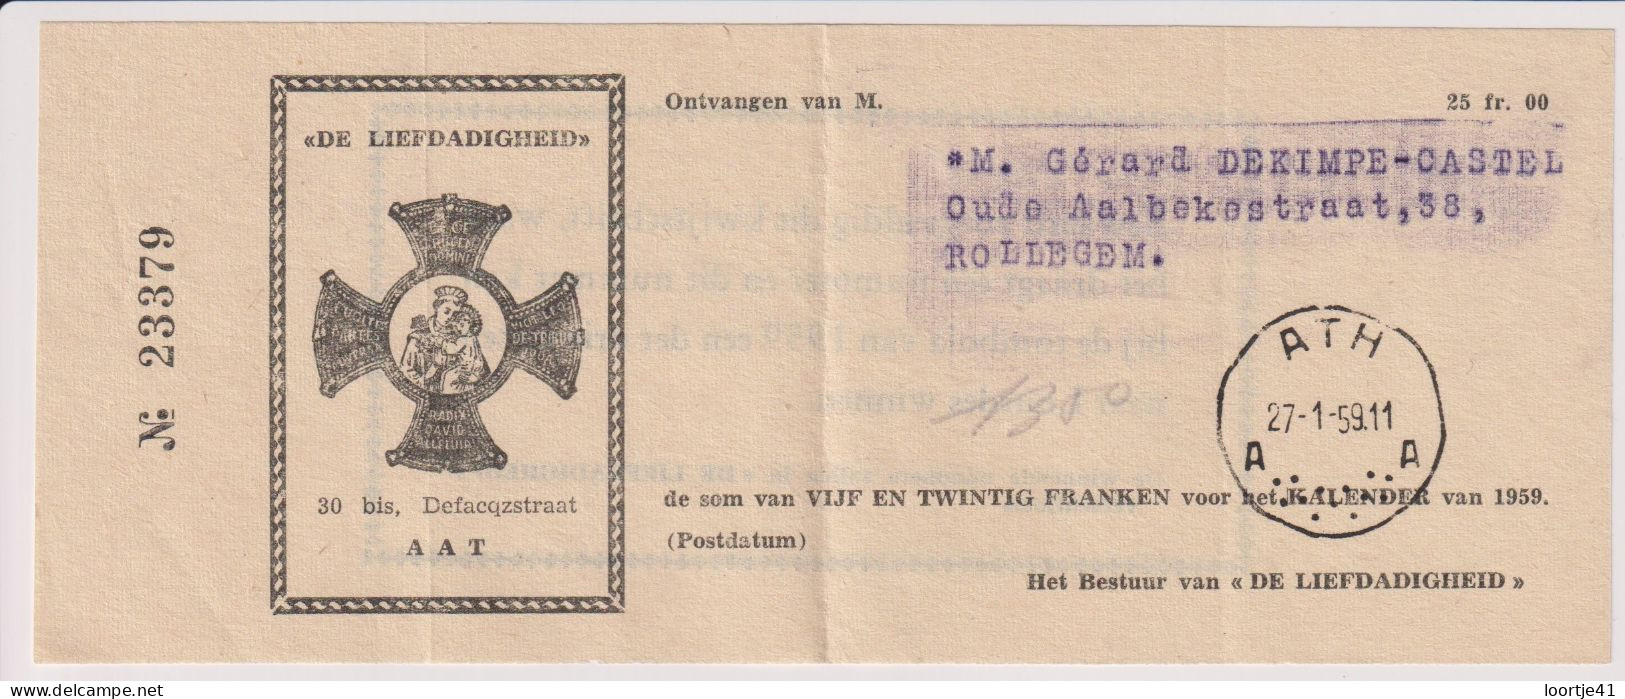 Aat Ath - Lidmaatschap De Liefdadigheid - 1959 - Membership Cards